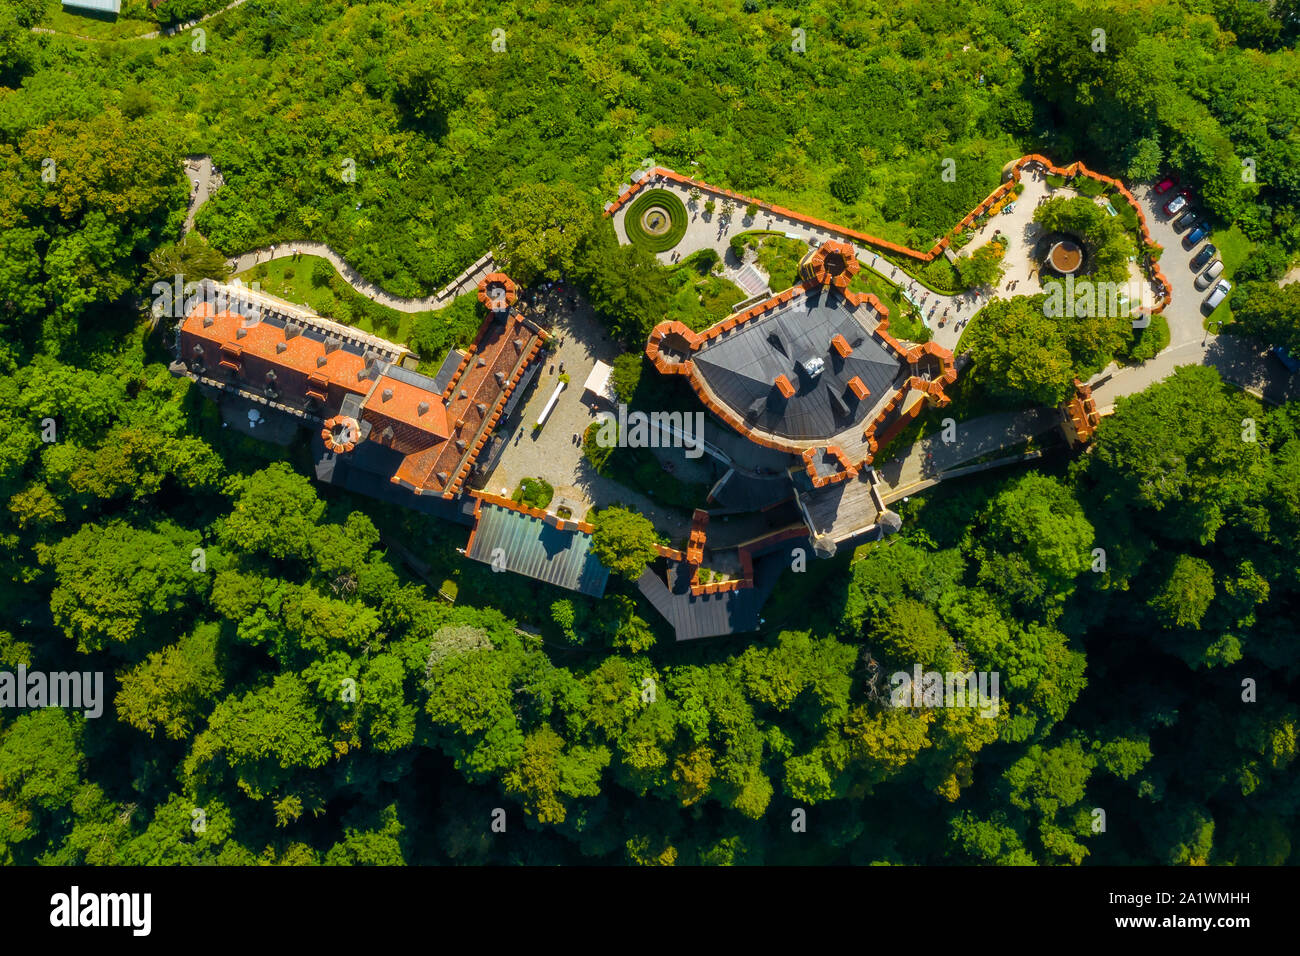 Blick auf das Schloss Hohenschwangau Schwangau, Bayern, Deutschland. Drone Bild der Landschaft mit Bäumen. Stockfoto